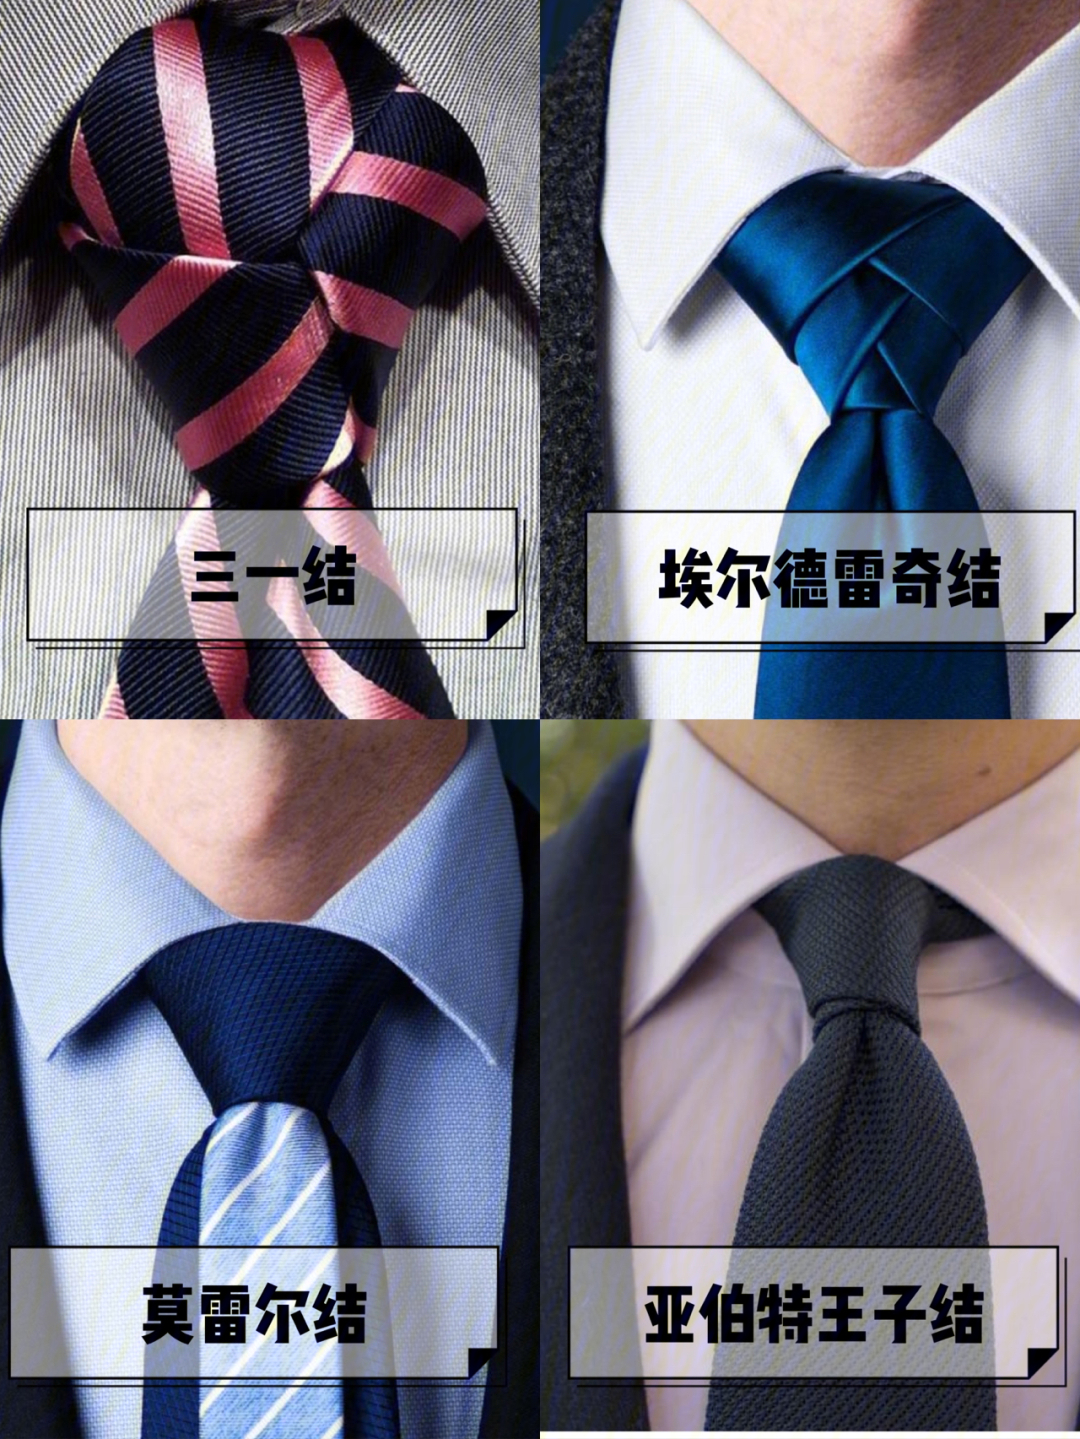 基础上做出变化的领带结,这个打法比较适合运用在图案简单96的领带